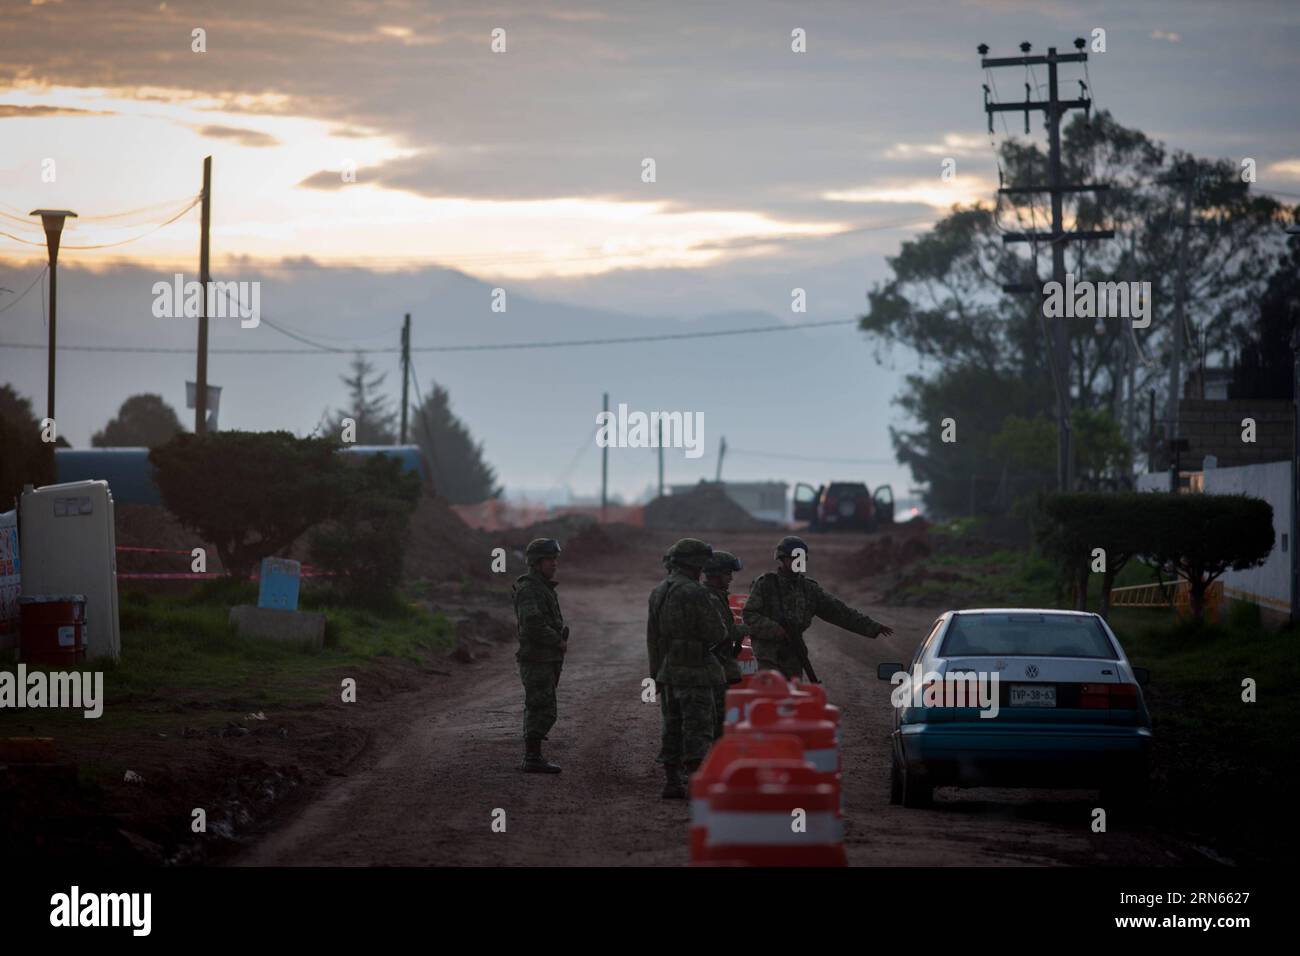 ALMOLOYA DE JUAREZ, des éléments du Secrétariat à la Défense nationale (SEDENA, pour son acronyme en espagnol), ont participé à une opération de sécurité dans les environs de la prison d'Altiplano dans le canton d'Almoloya de Juarez, État de Mexico, Mexique, le 12 juillet 2015. Joaquin El Chapo Guzman, le roi du cartel de la drogue mexicain, s'est évadé de prison par un tunnel de plus de 1,5 km de long sous sa cellule, ont déclaré dimanche les autorités. Guzman, chef du cartel de la drogue de Sinaloa, a disparu samedi soir de la prison de haute sécurité Altiplano à l'extérieur de Mexico, selon la Commission de sécurité nationale. (dz Banque D'Images